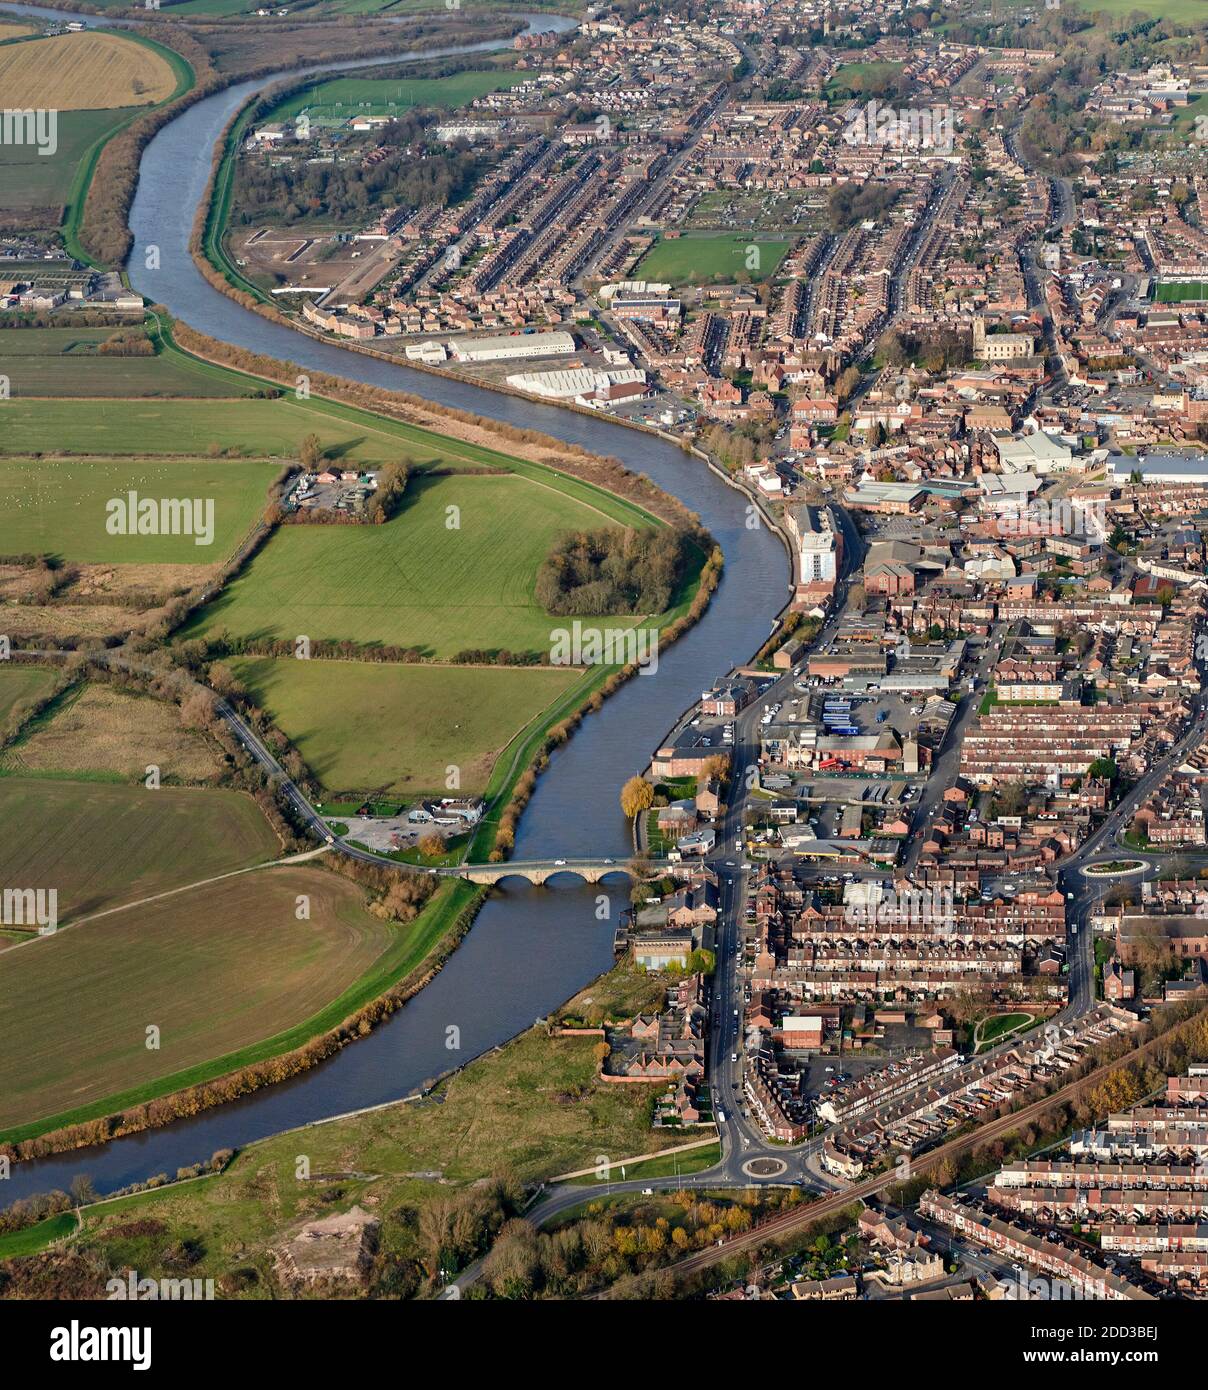 Ville rurale de Gainsborough, sur la rivière Trent, au nord de l'Angleterre, au Royaume-Uni Banque D'Images